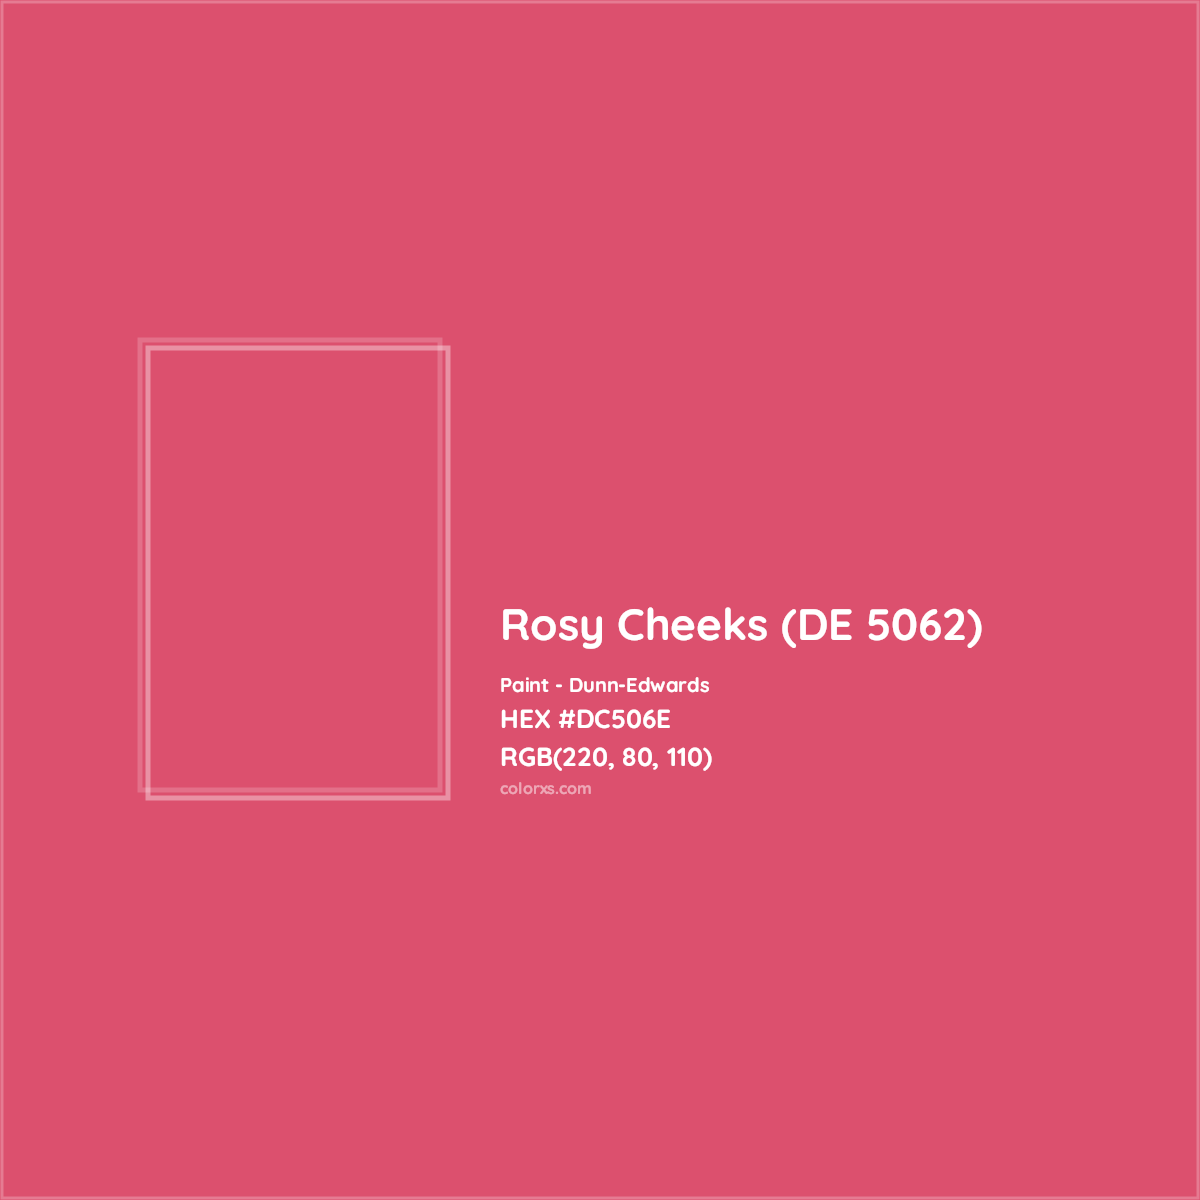 HEX #DC506E Rosy Cheeks (DE 5062) Paint Dunn-Edwards - Color Code